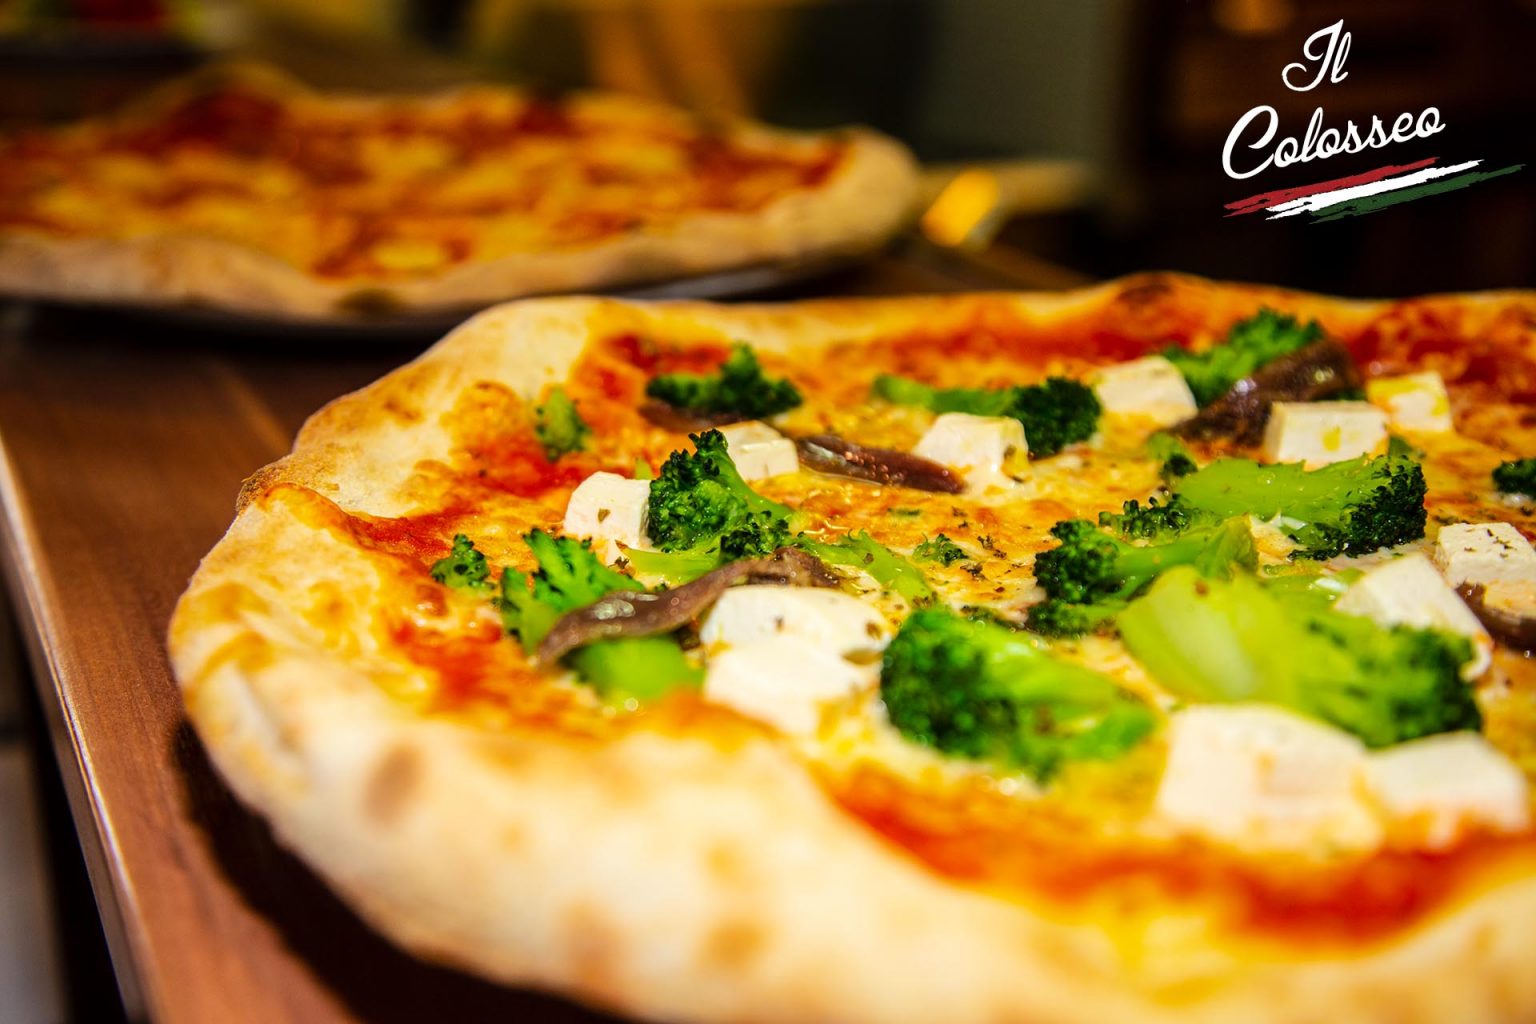 Il-Colosseo-im-Hotel-am-Schloß-Treptow-Köpenick-12555-Berlin-Grünauer-Str-Ristorante-und-Pizzeria-Italienisches-Restaurant-italienisch-küche-Pizza-100